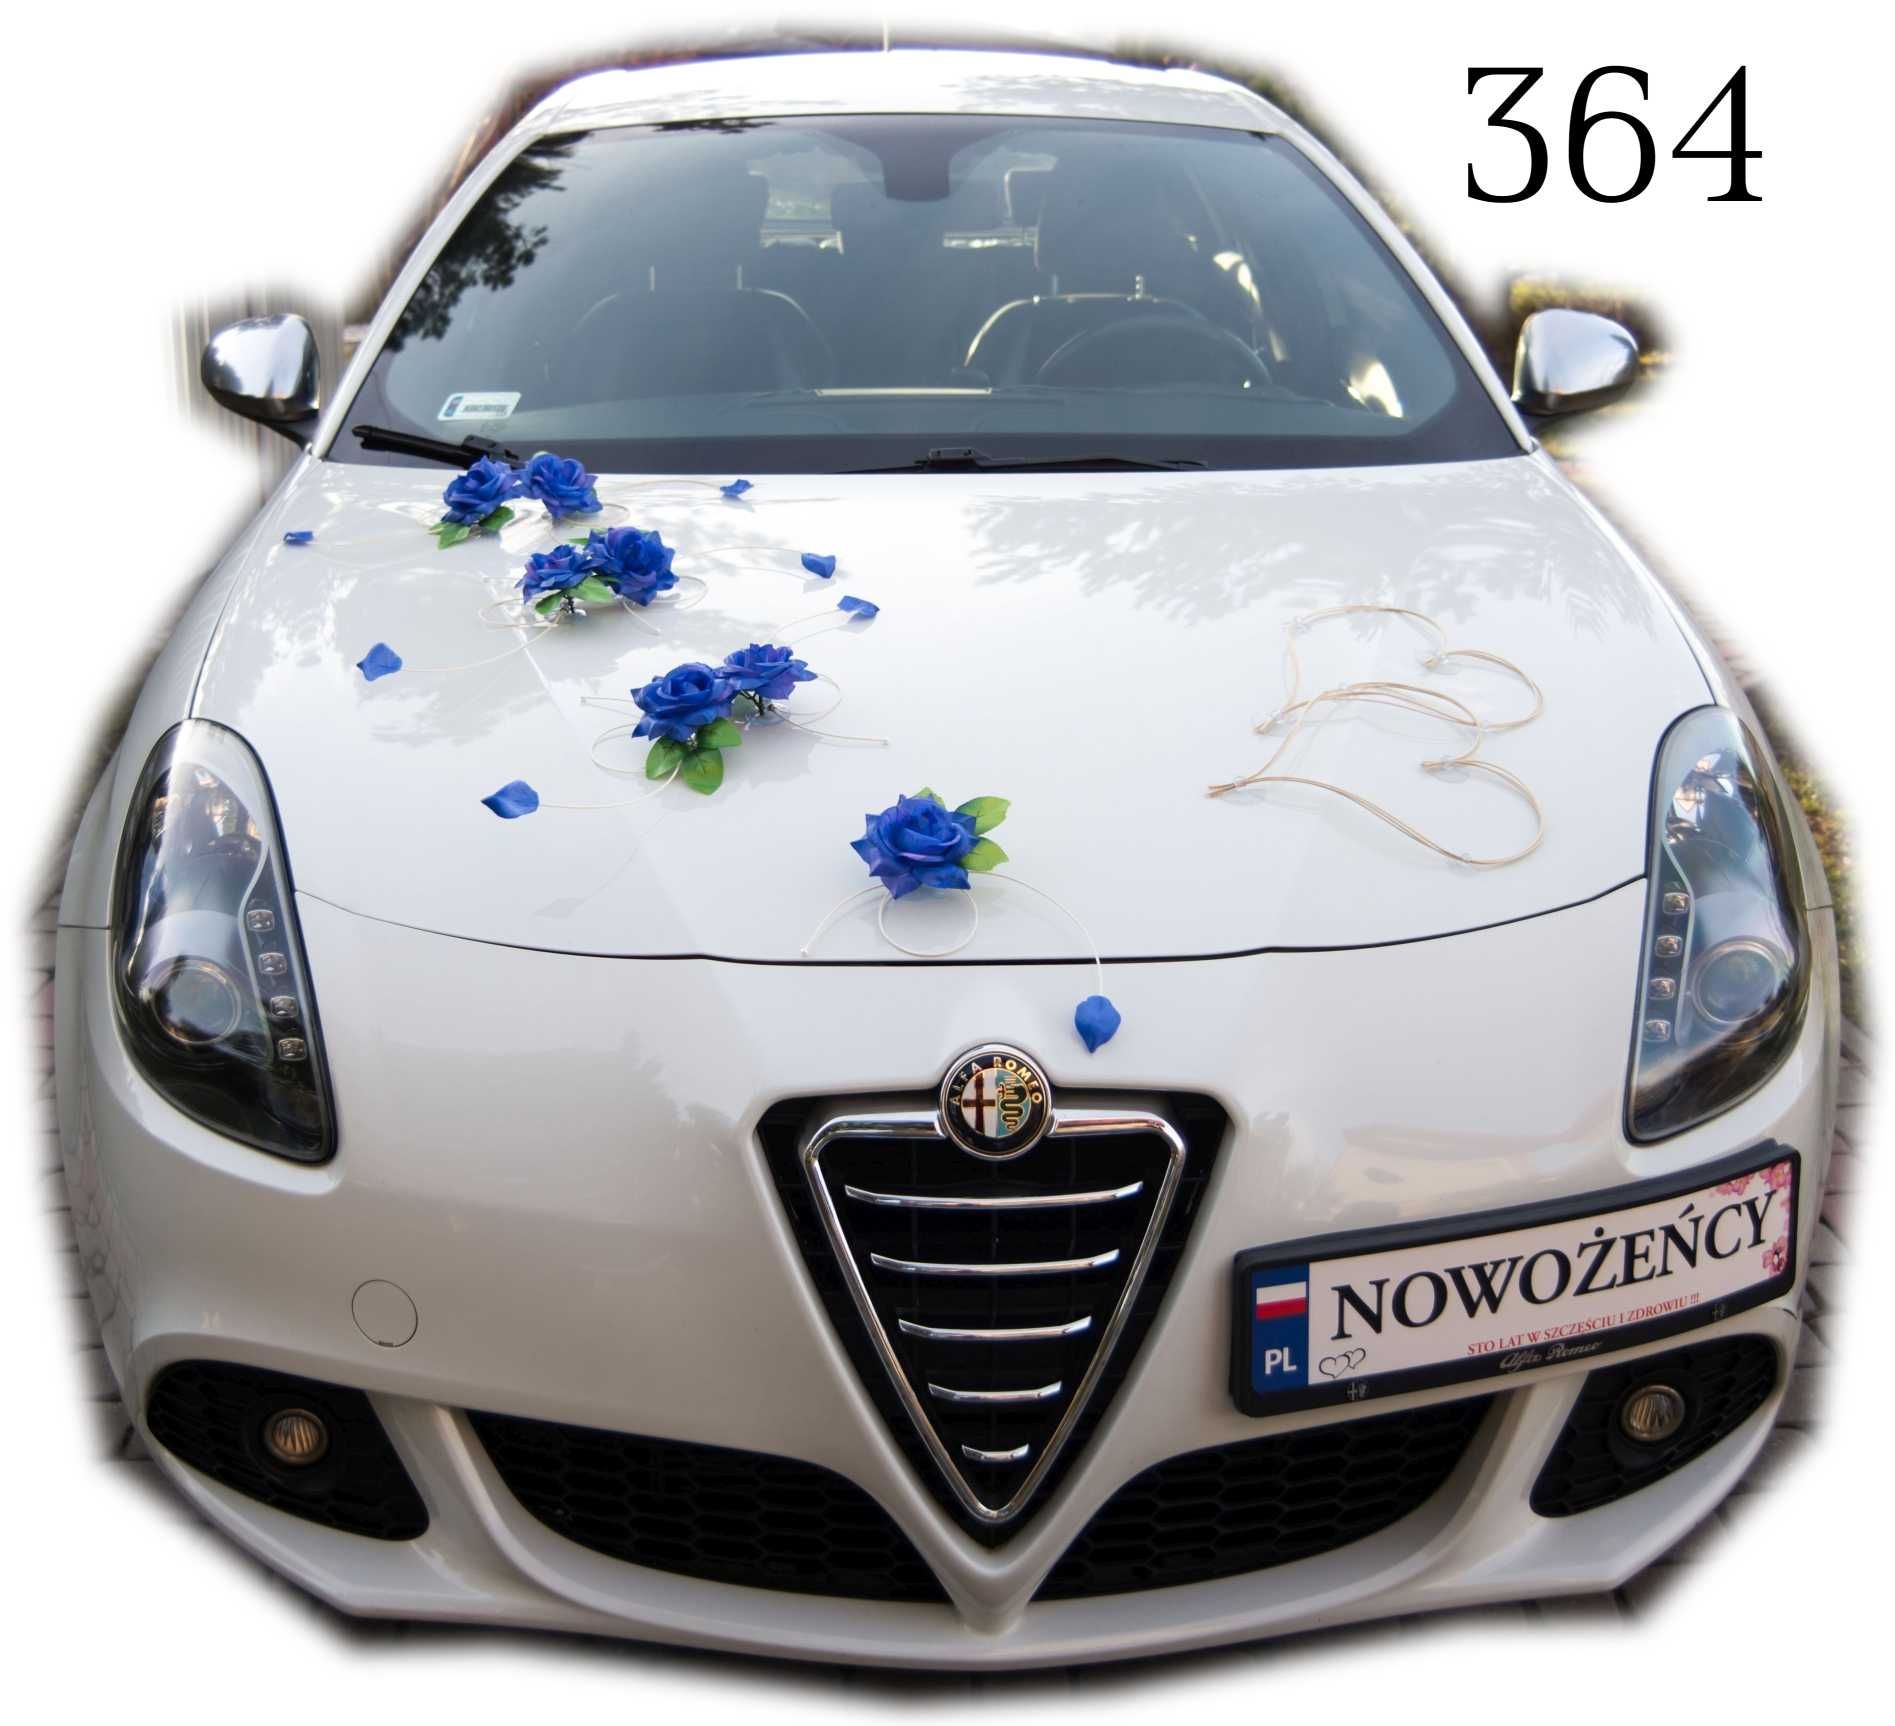 BEZPIECZNA DLA SAMOCHODU dekoracja na samochód Nr 364